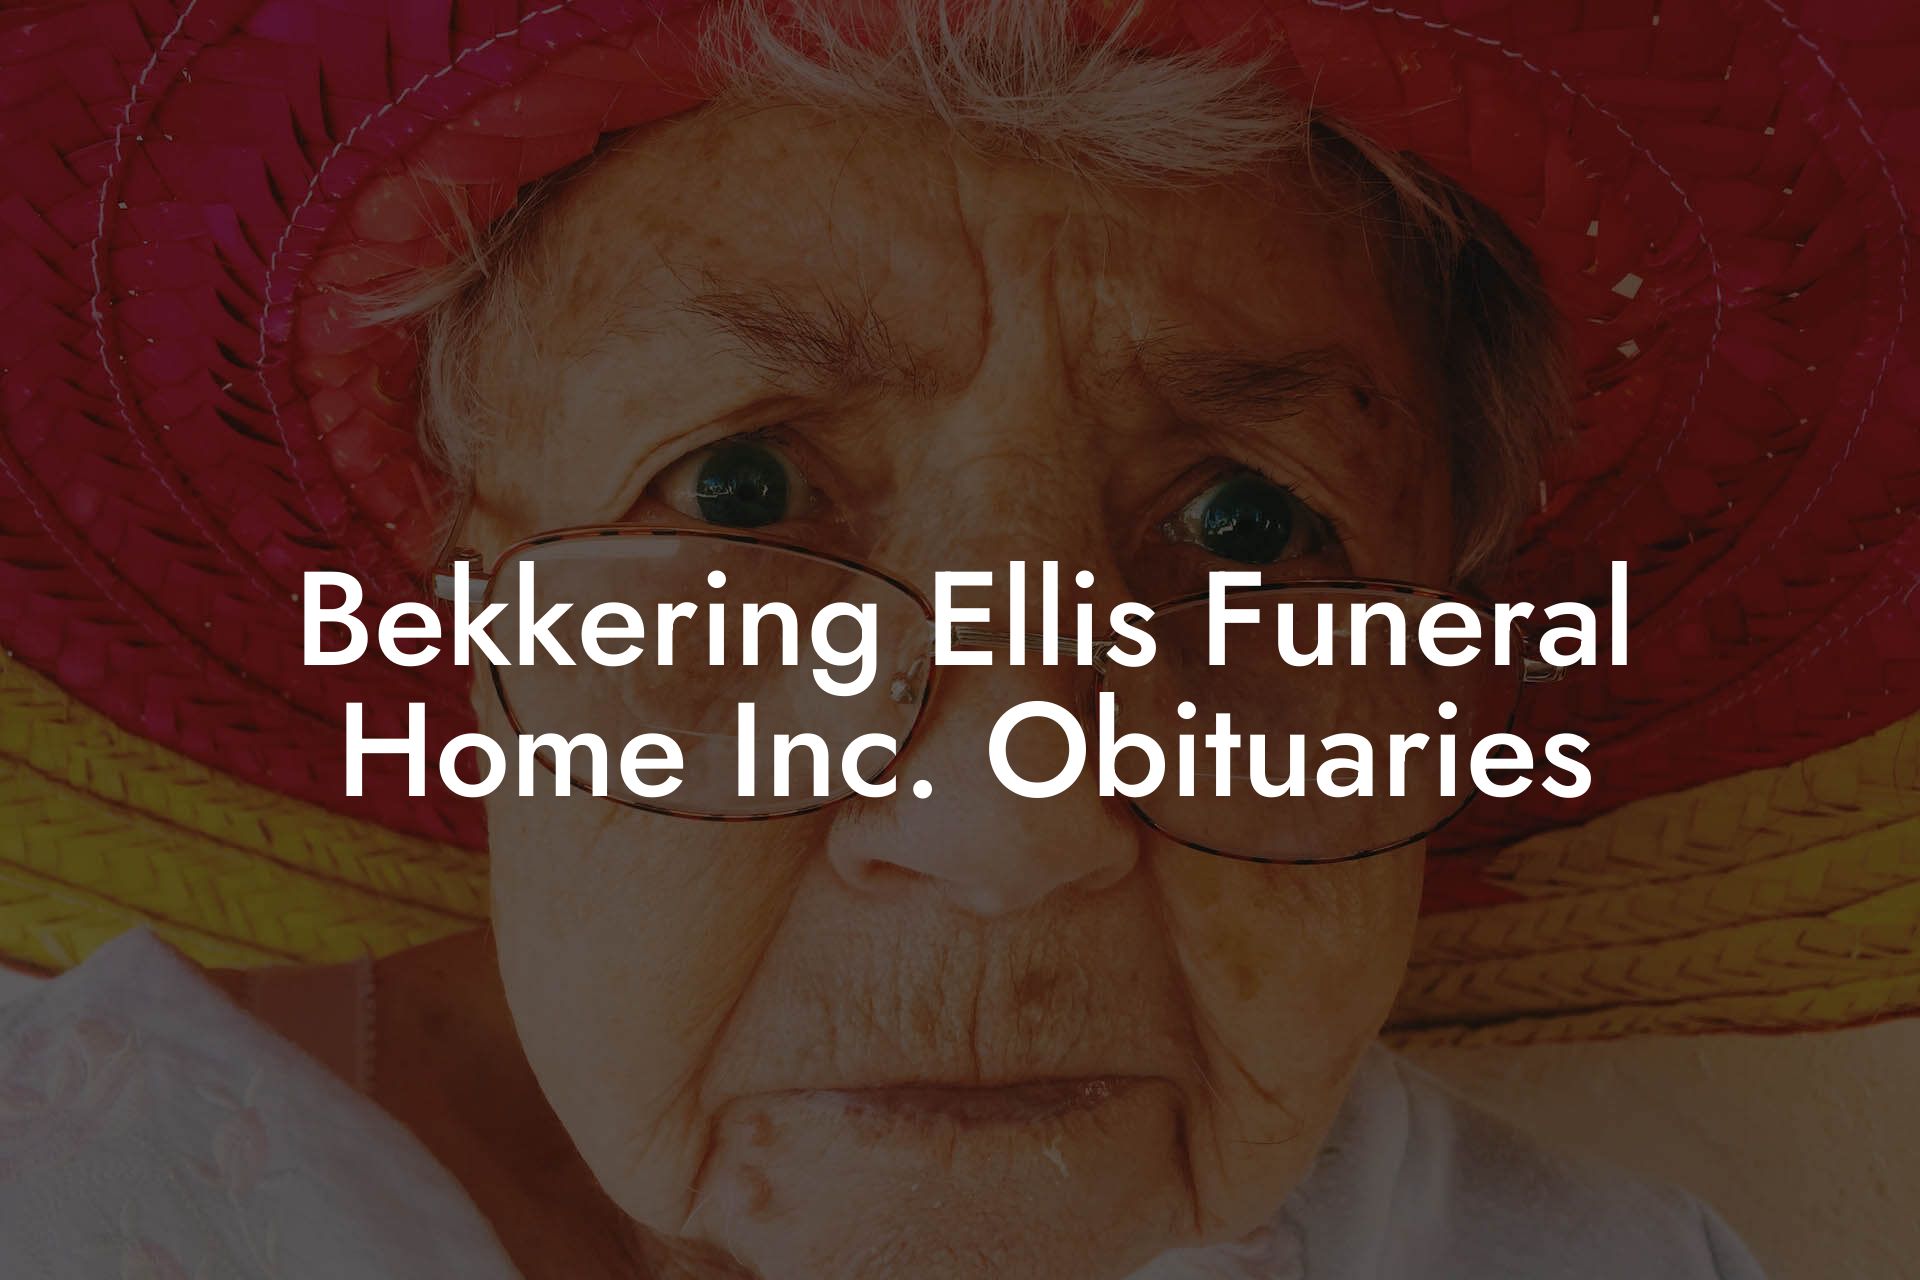 Bekkering Ellis Funeral Home Inc. Obituaries